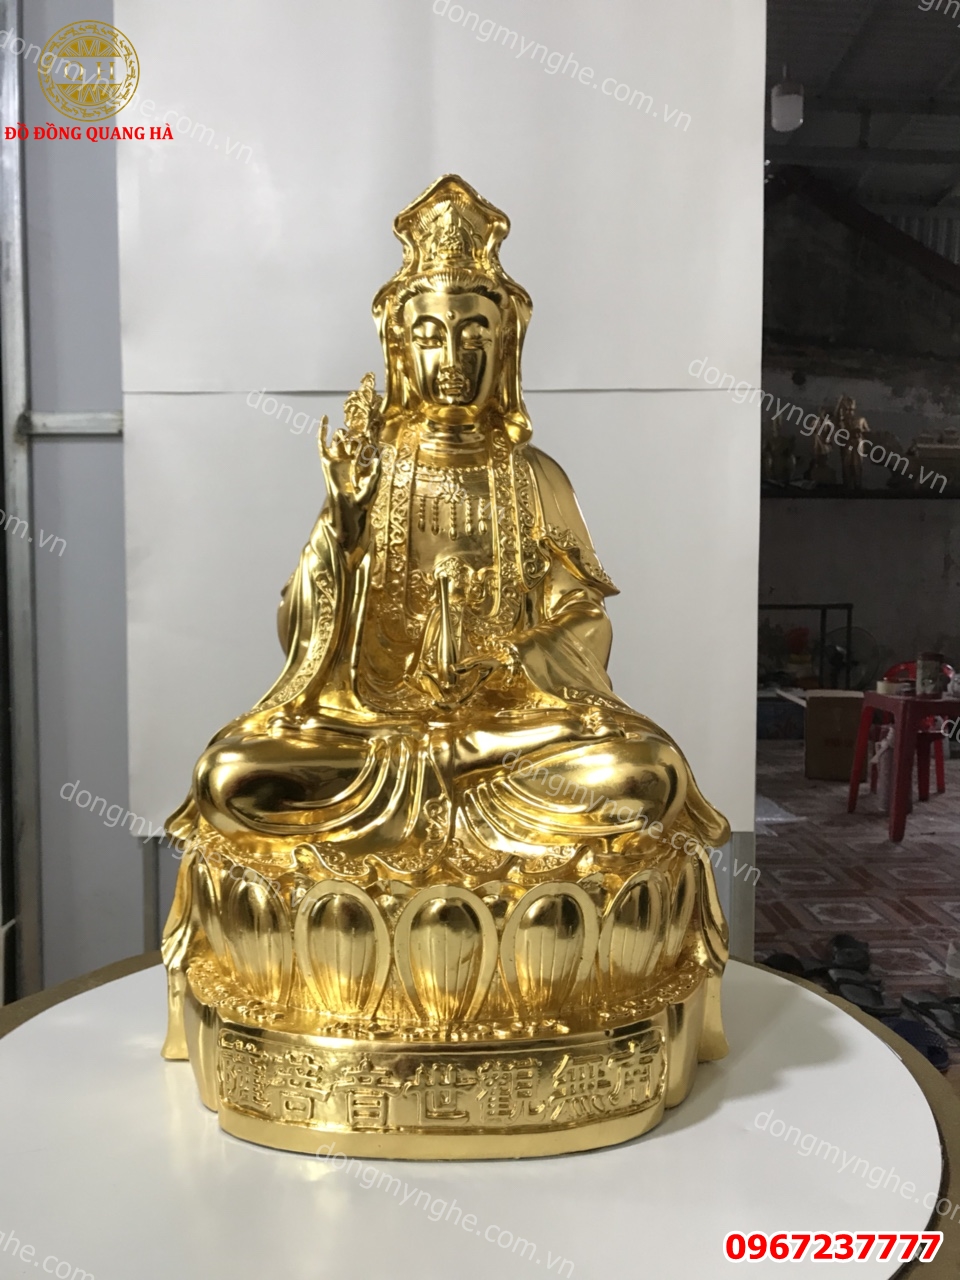 【Xem ngay】33+ mẫu Tượng Phật Bà Quan Âm bằng đồng đẹp nhất